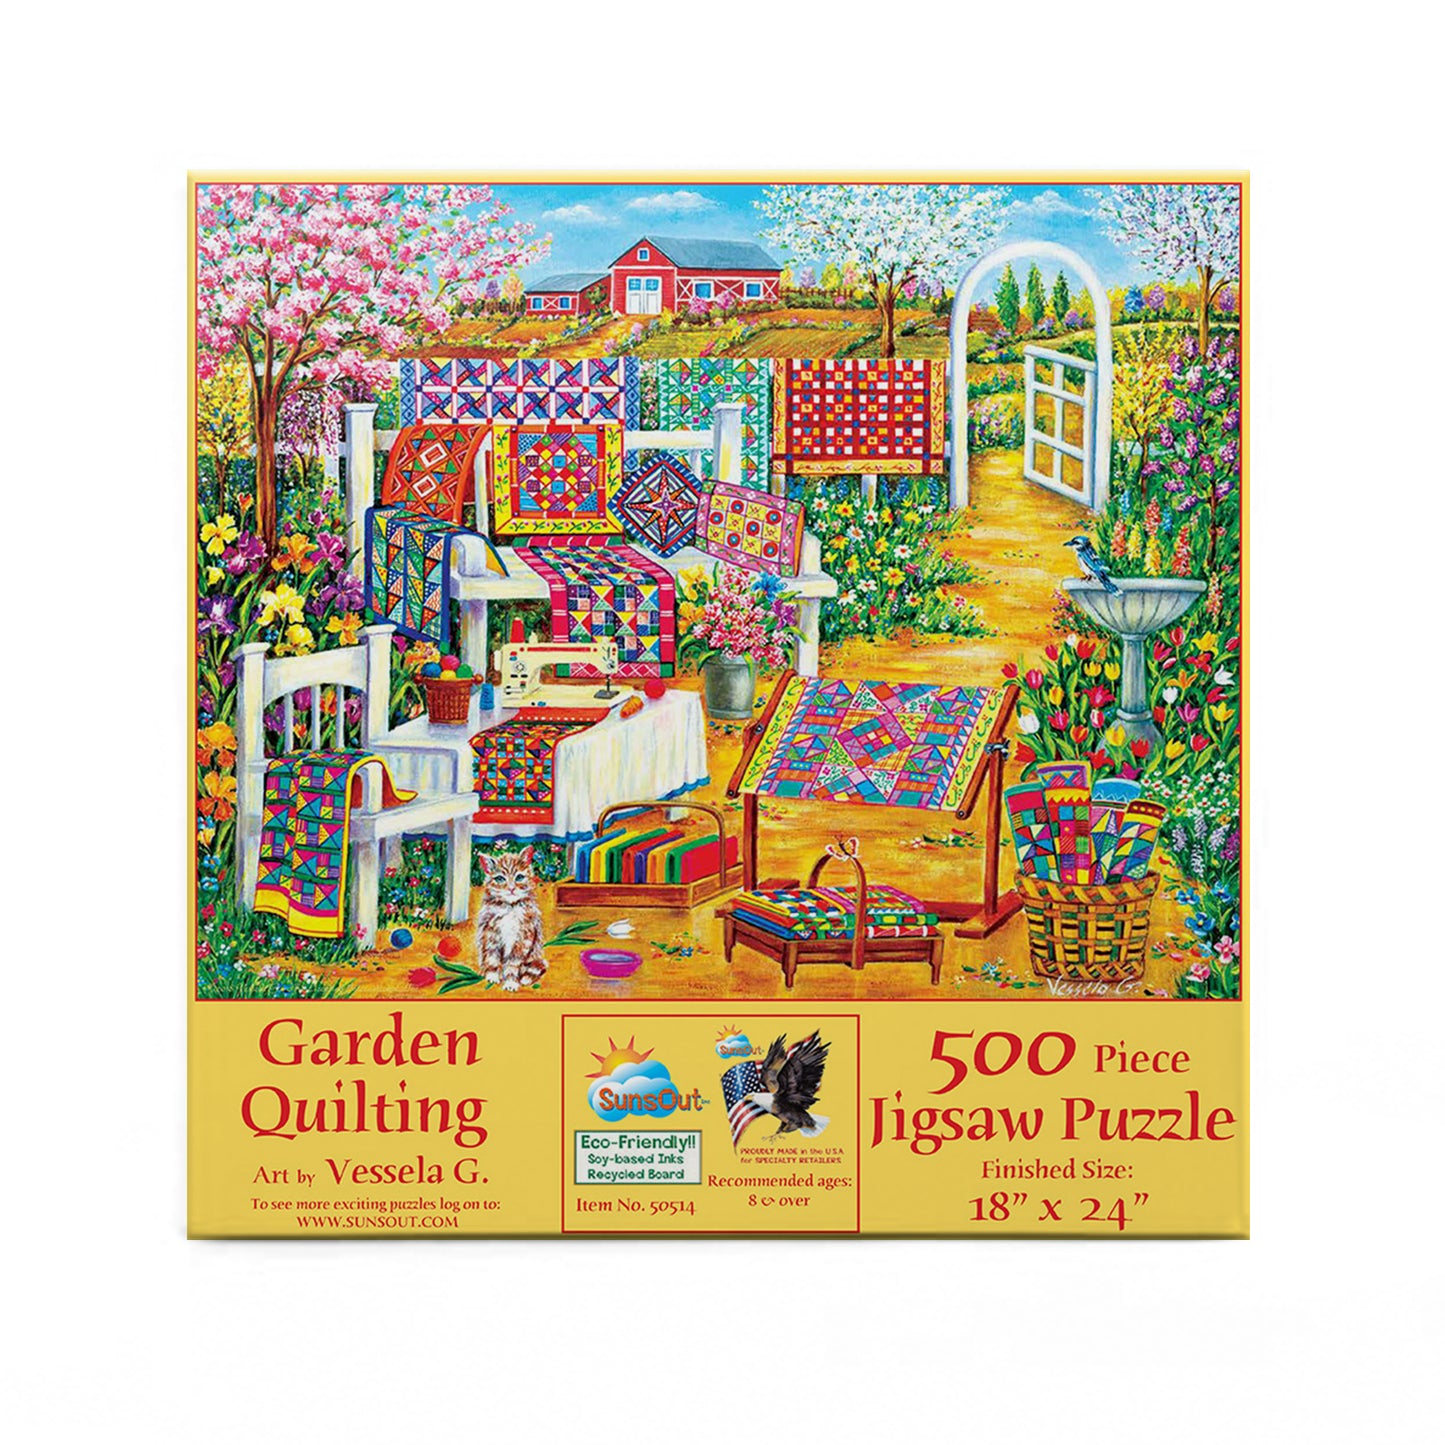 Garden Quilting - 500 Piece Jigsaw Puzzle